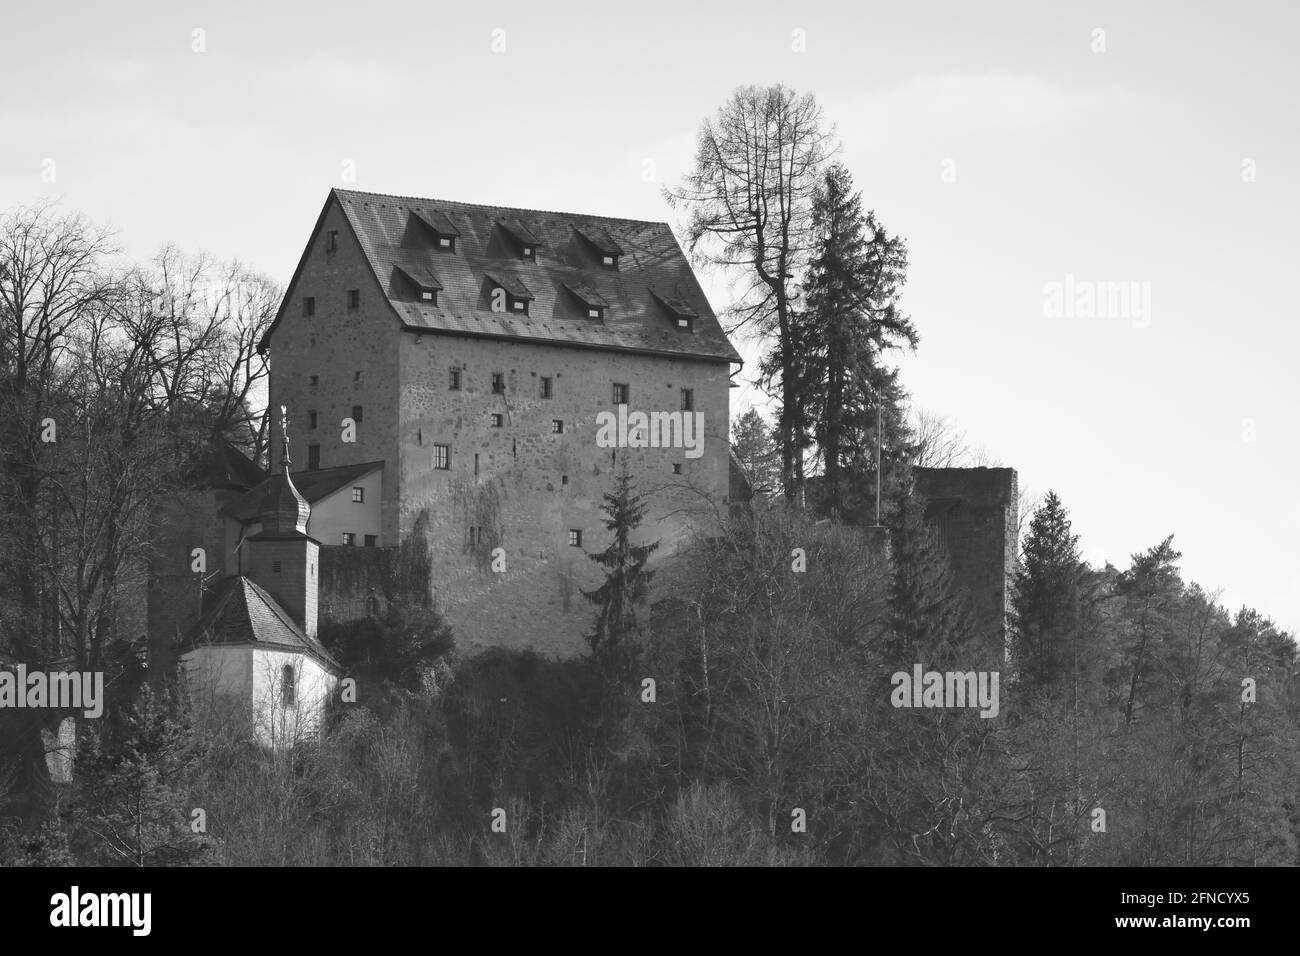 photographie monochrome pittoresque d'un château médiéval Banque D'Images